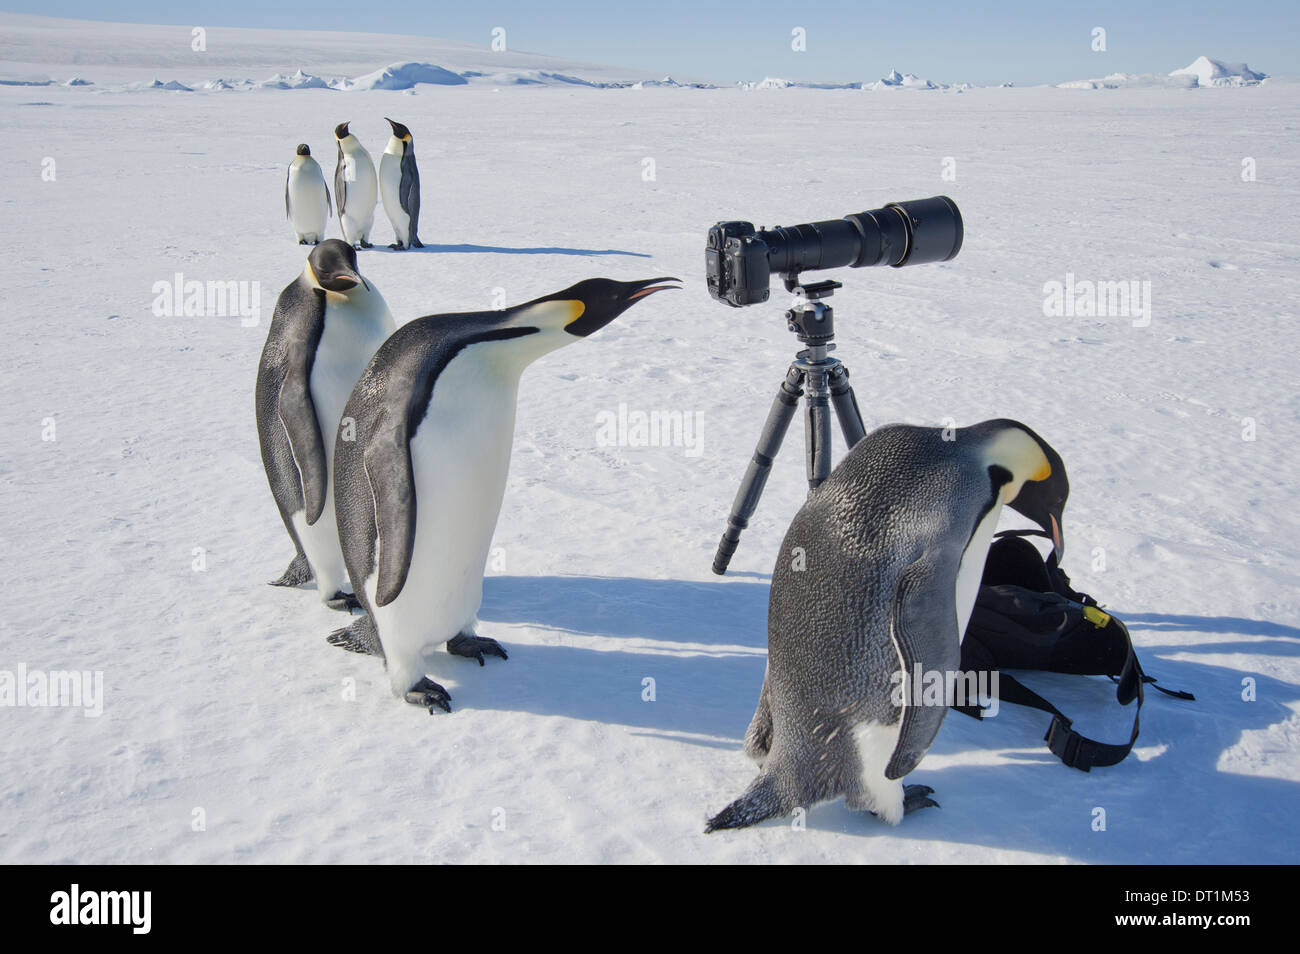 Un petit groupe de curieux de manchots empereurs et le trépied sur la glace un oiseau à travers le viseur Banque D'Images